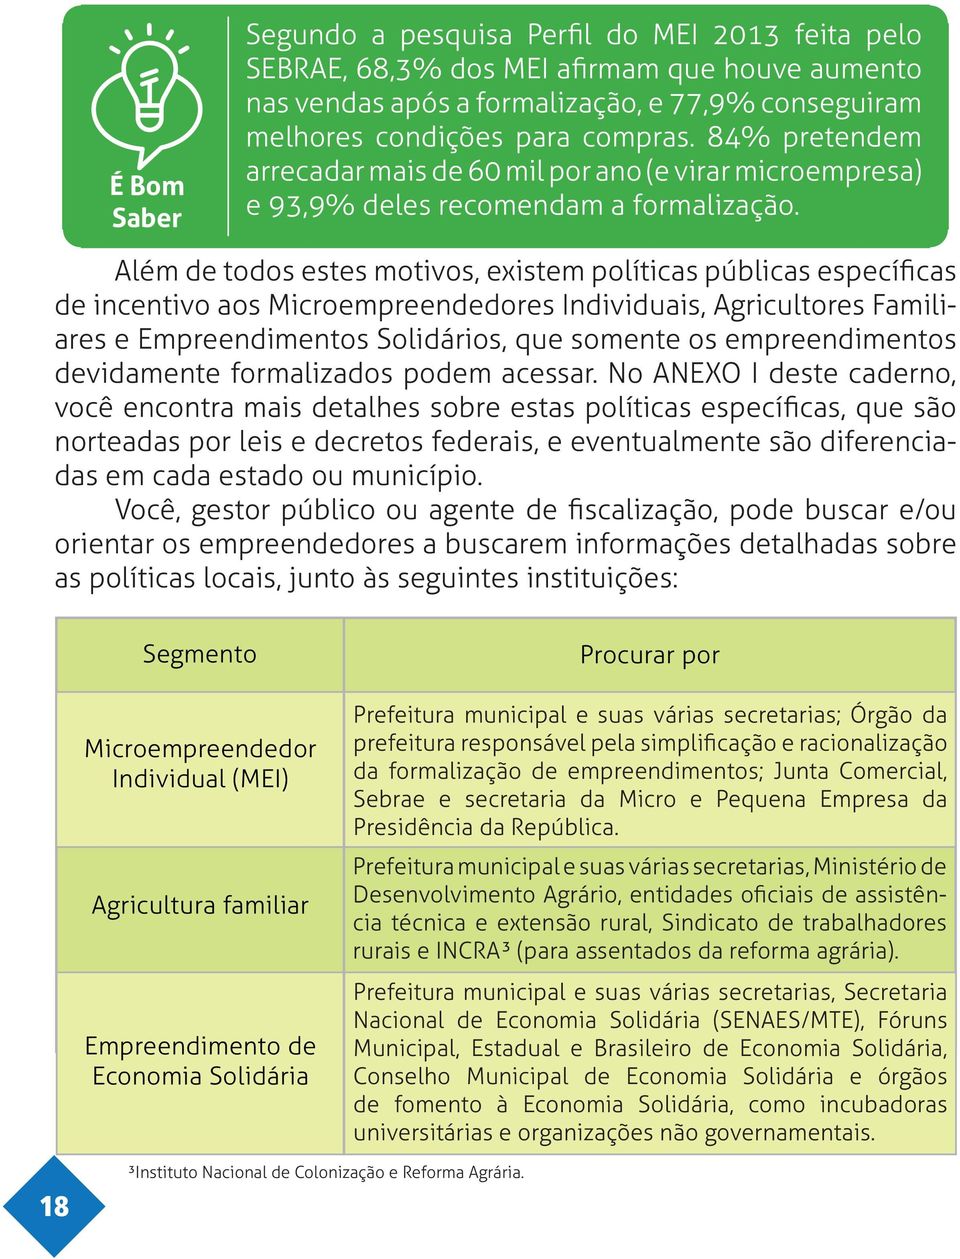 Além de todos estes motivos, existem políticas públicas específicas de incentivo aos Microempreendedores Individuais, Agricultores Familiares e Empreendimentos Solidários, que somente os